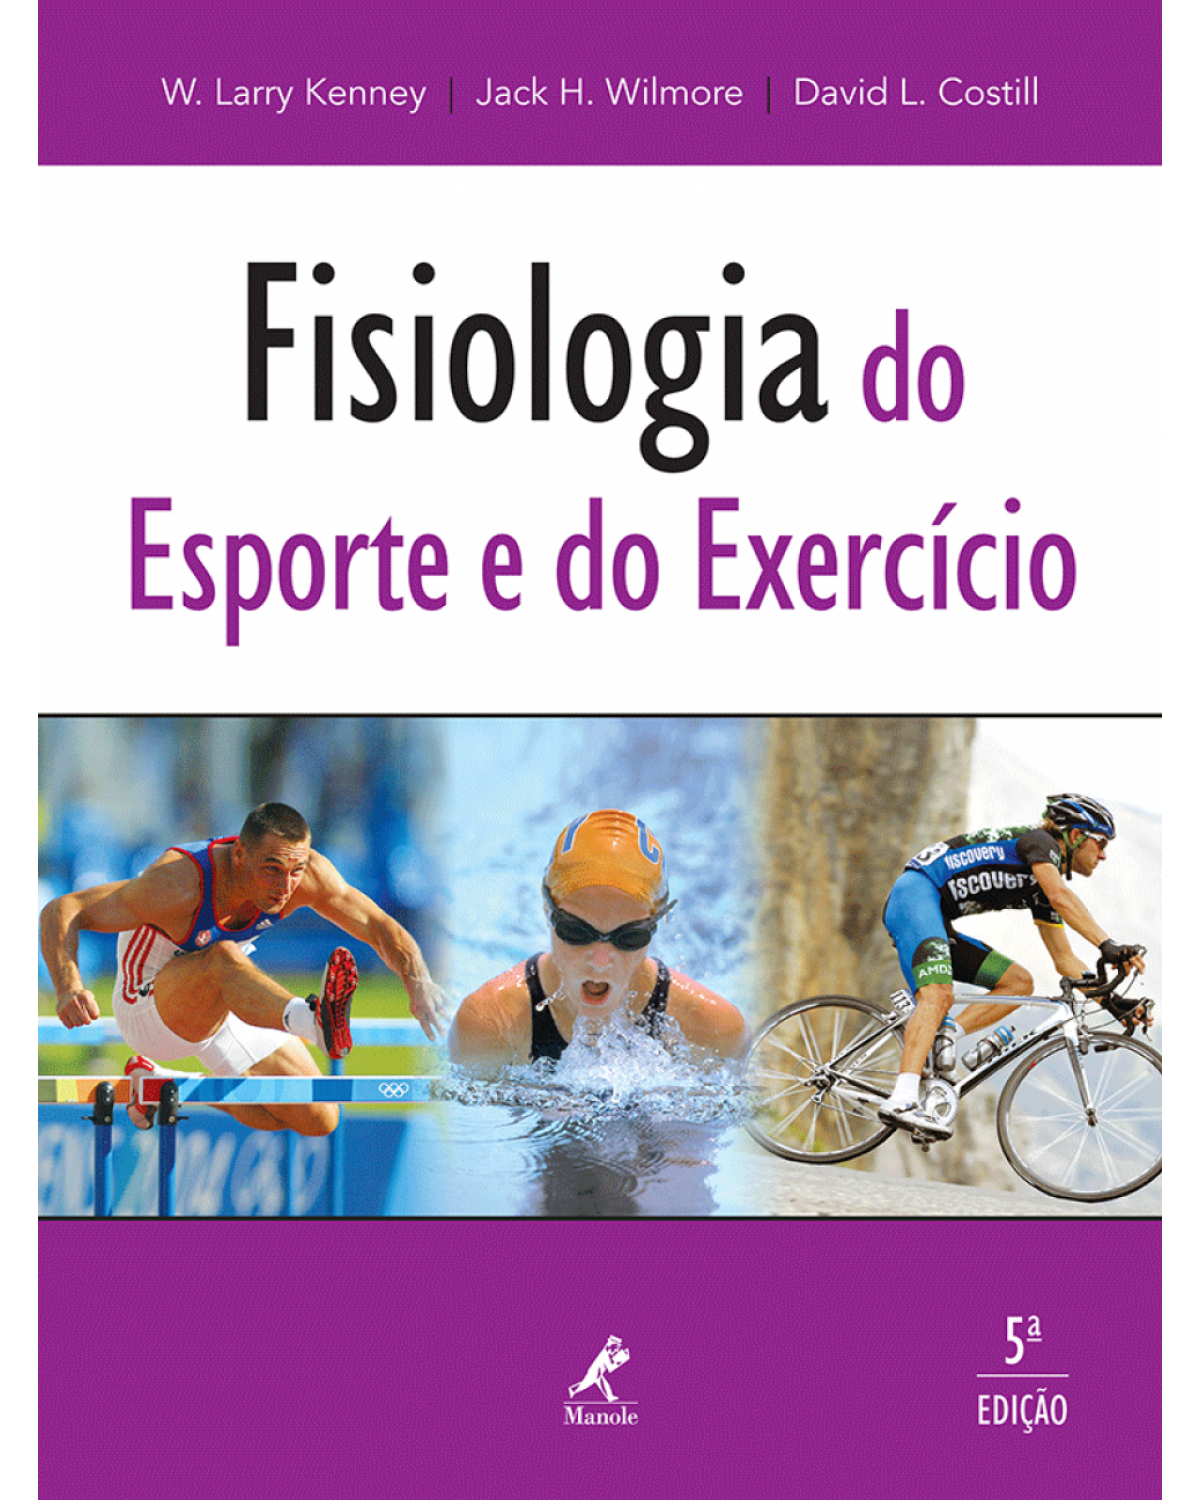 Fisiologia do esporte e do exercício - 5ª Edição | 2013